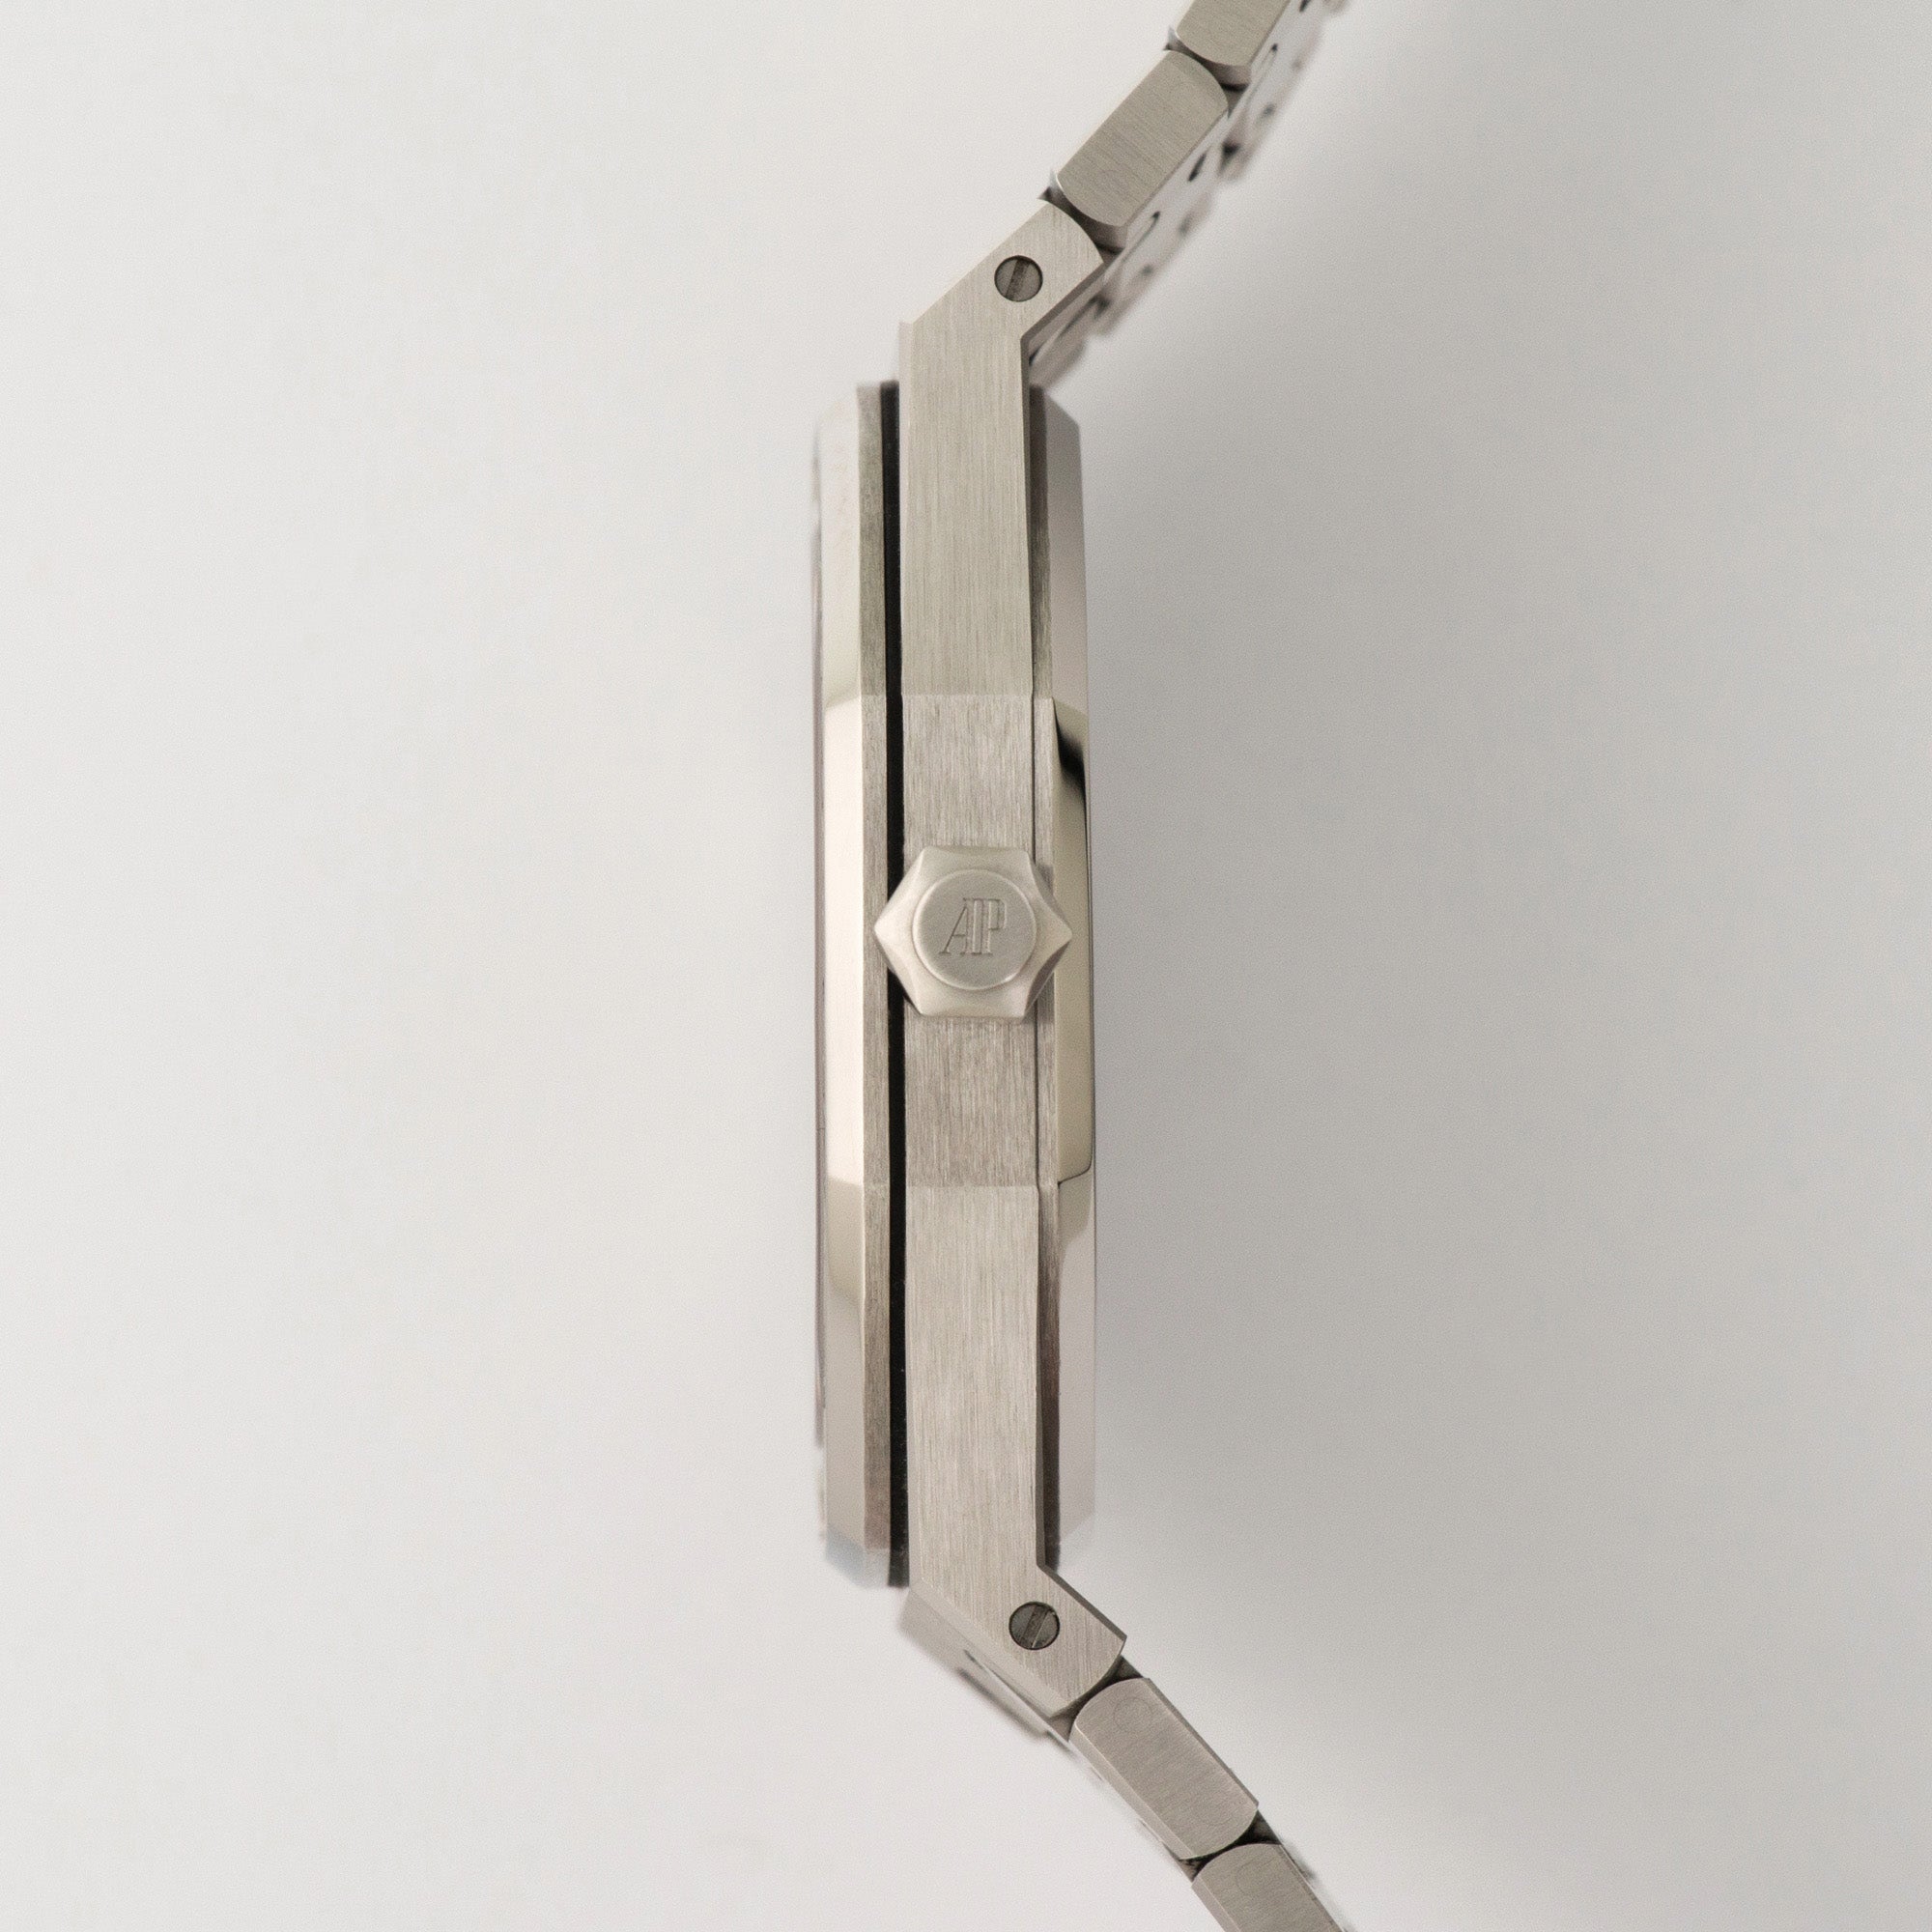 Audemars Piguet - Audemars Piguet Platinum Royal Oak Tourbillon Baguette Diamond Watch - The Keystone Watches